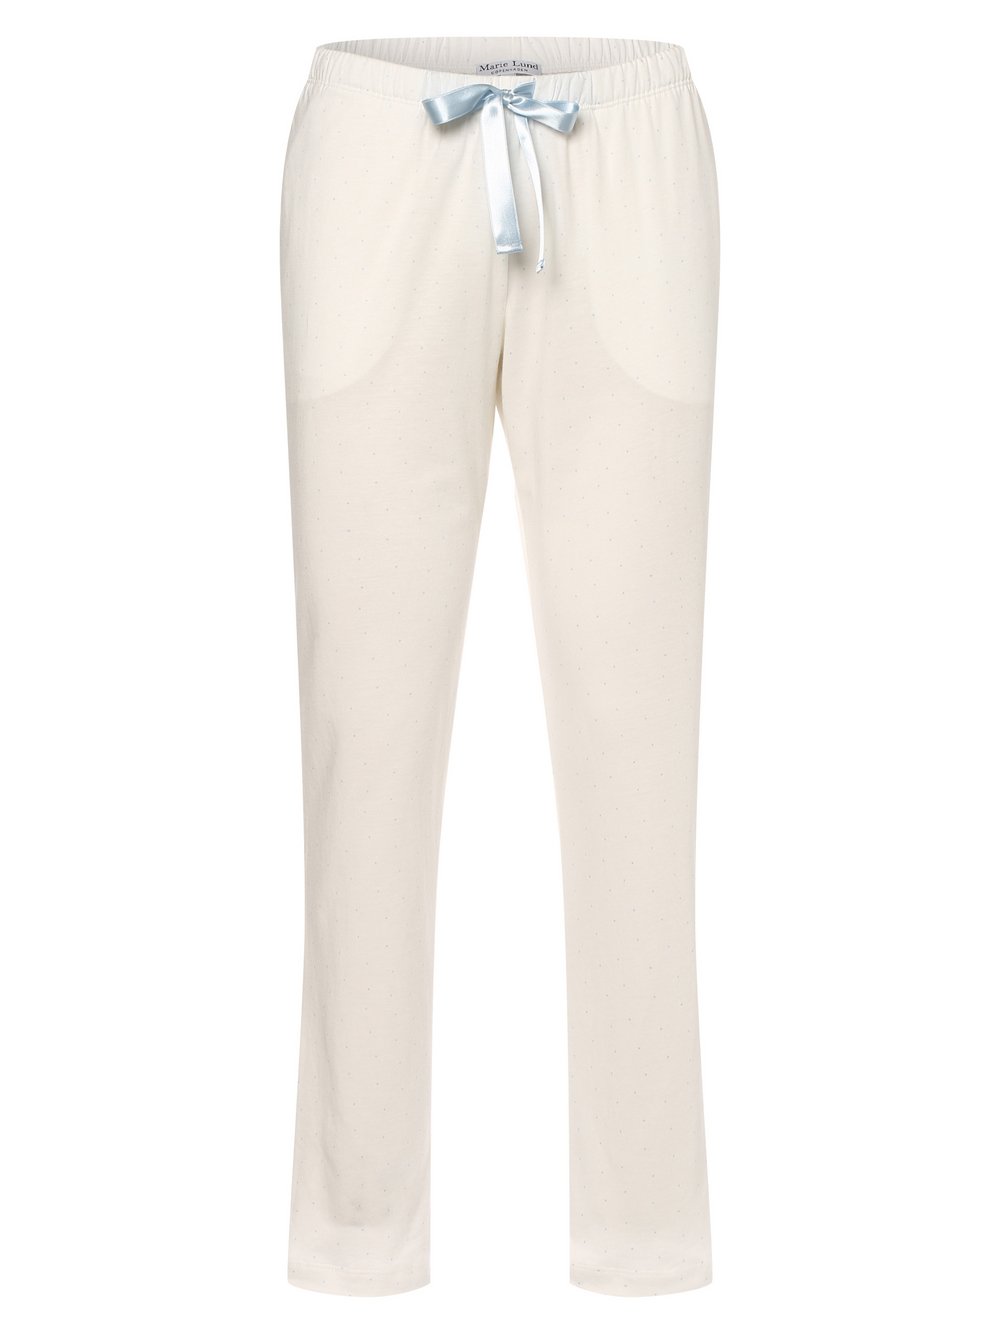 Marie Lund - Damskie spodnie od piżamy, biały